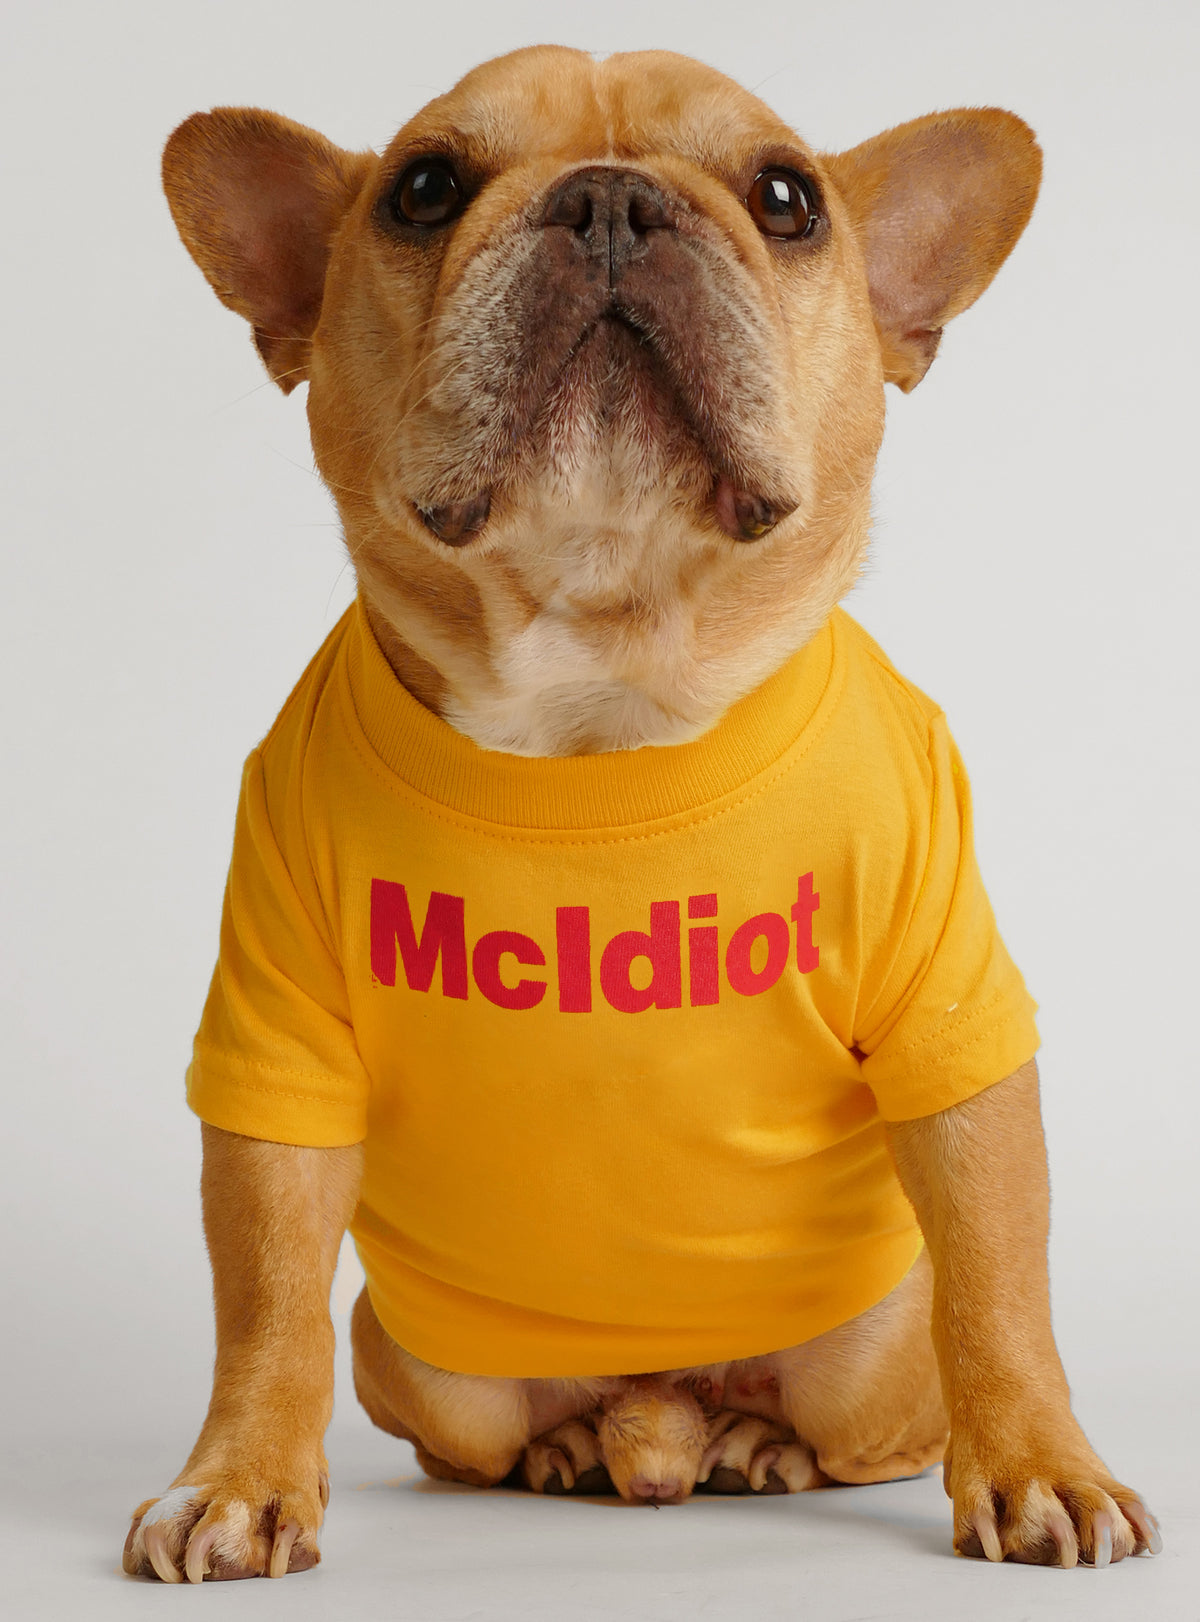 McIdiot Dog Tee